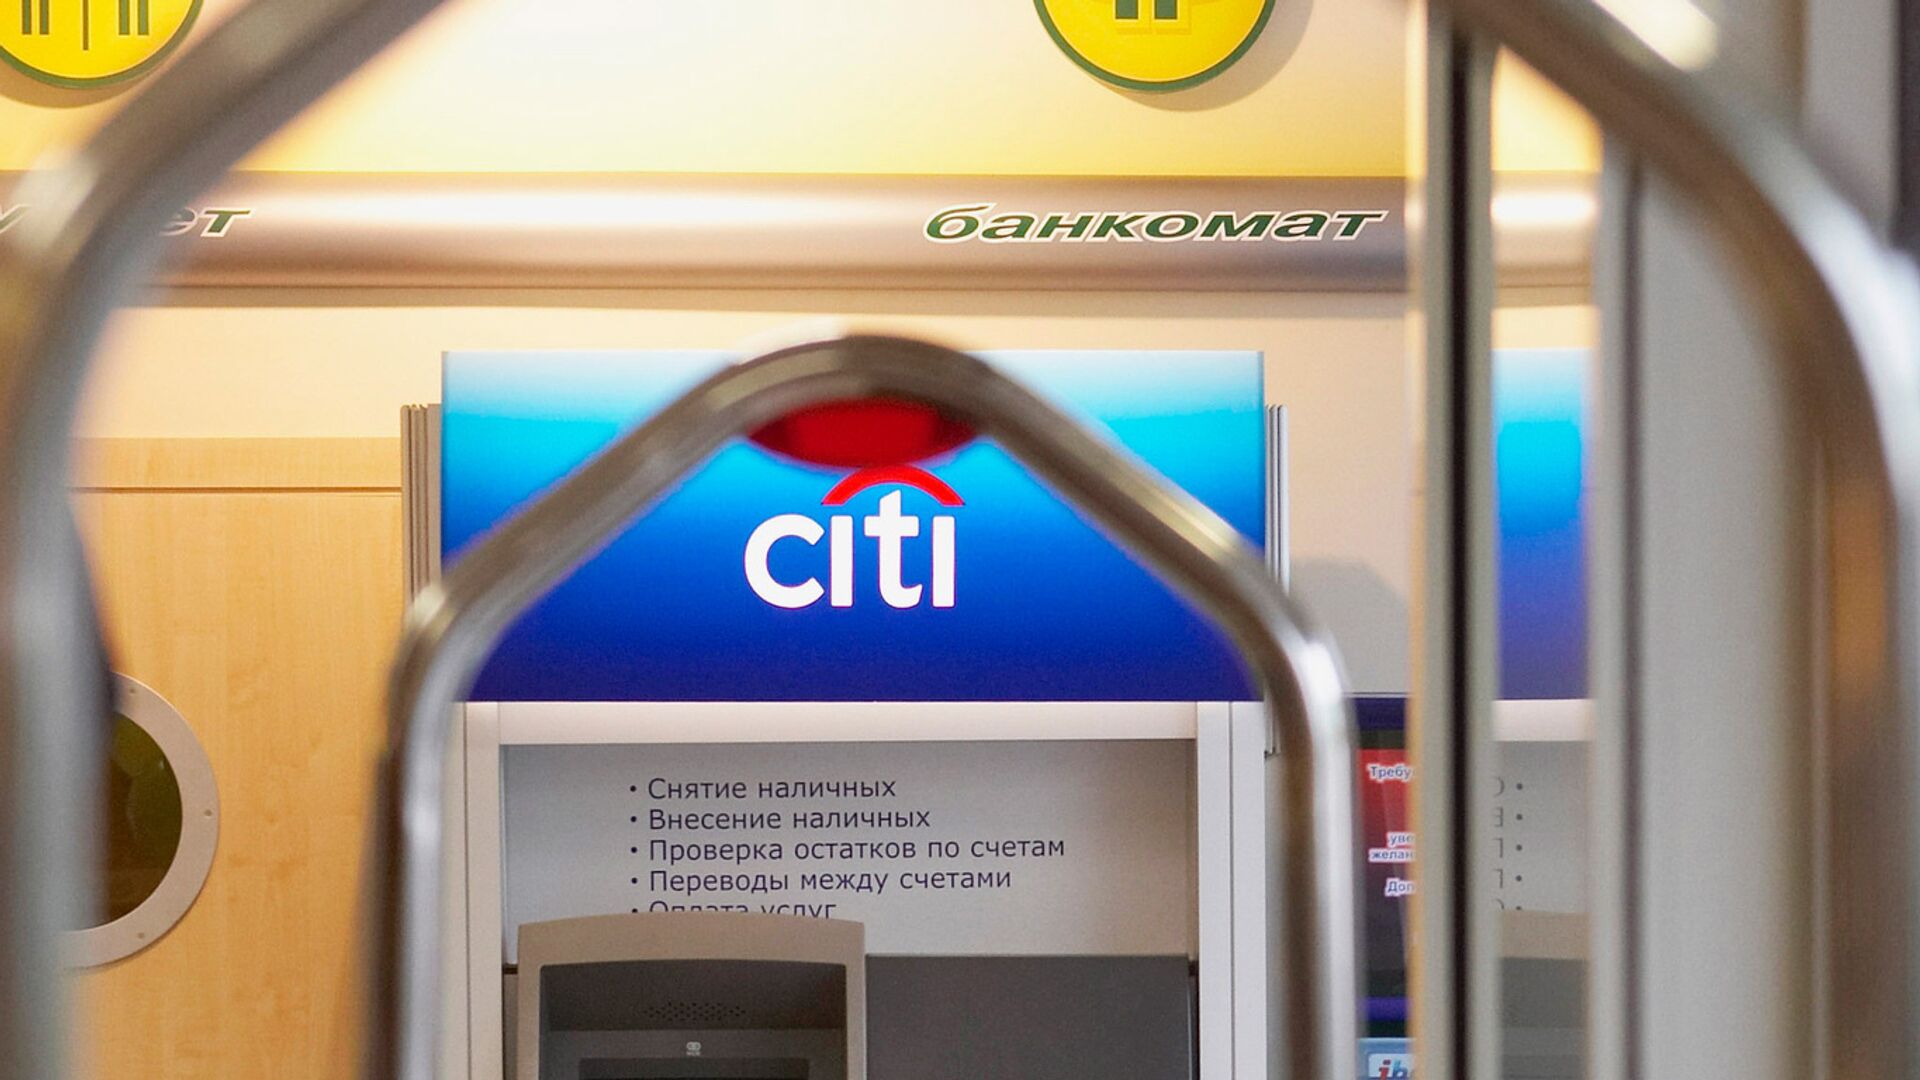 Сотрудники Citigroup готовятся к увольнениям и смене руководства - источники